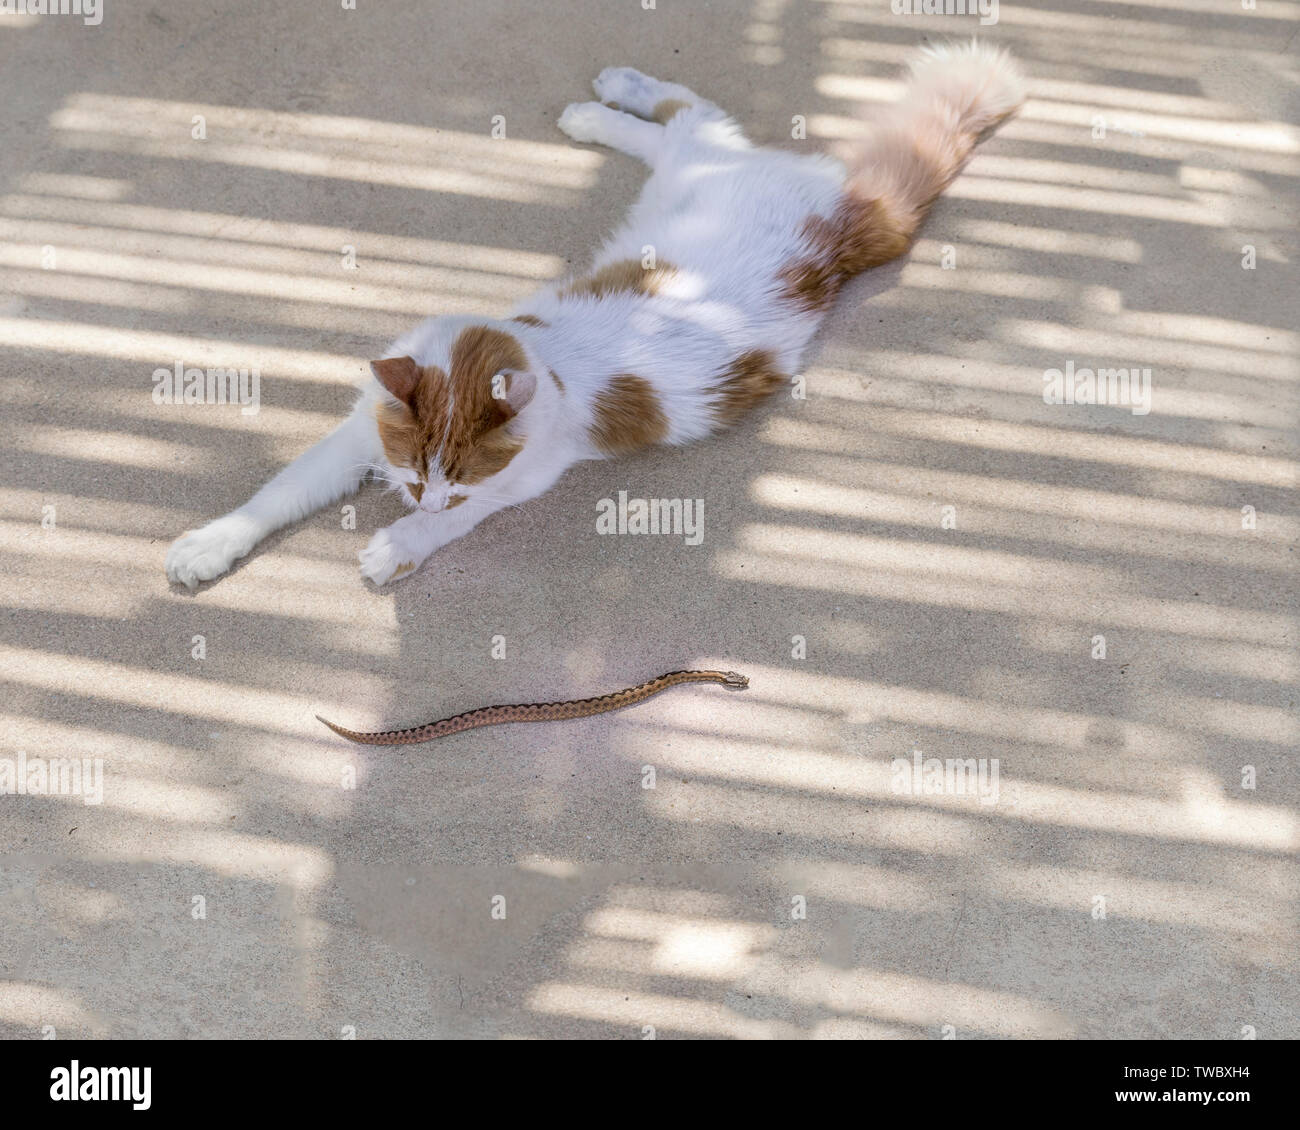 Hauskatze verfing sich eine kleine giftige Viper. Stock Bild Stockfoto